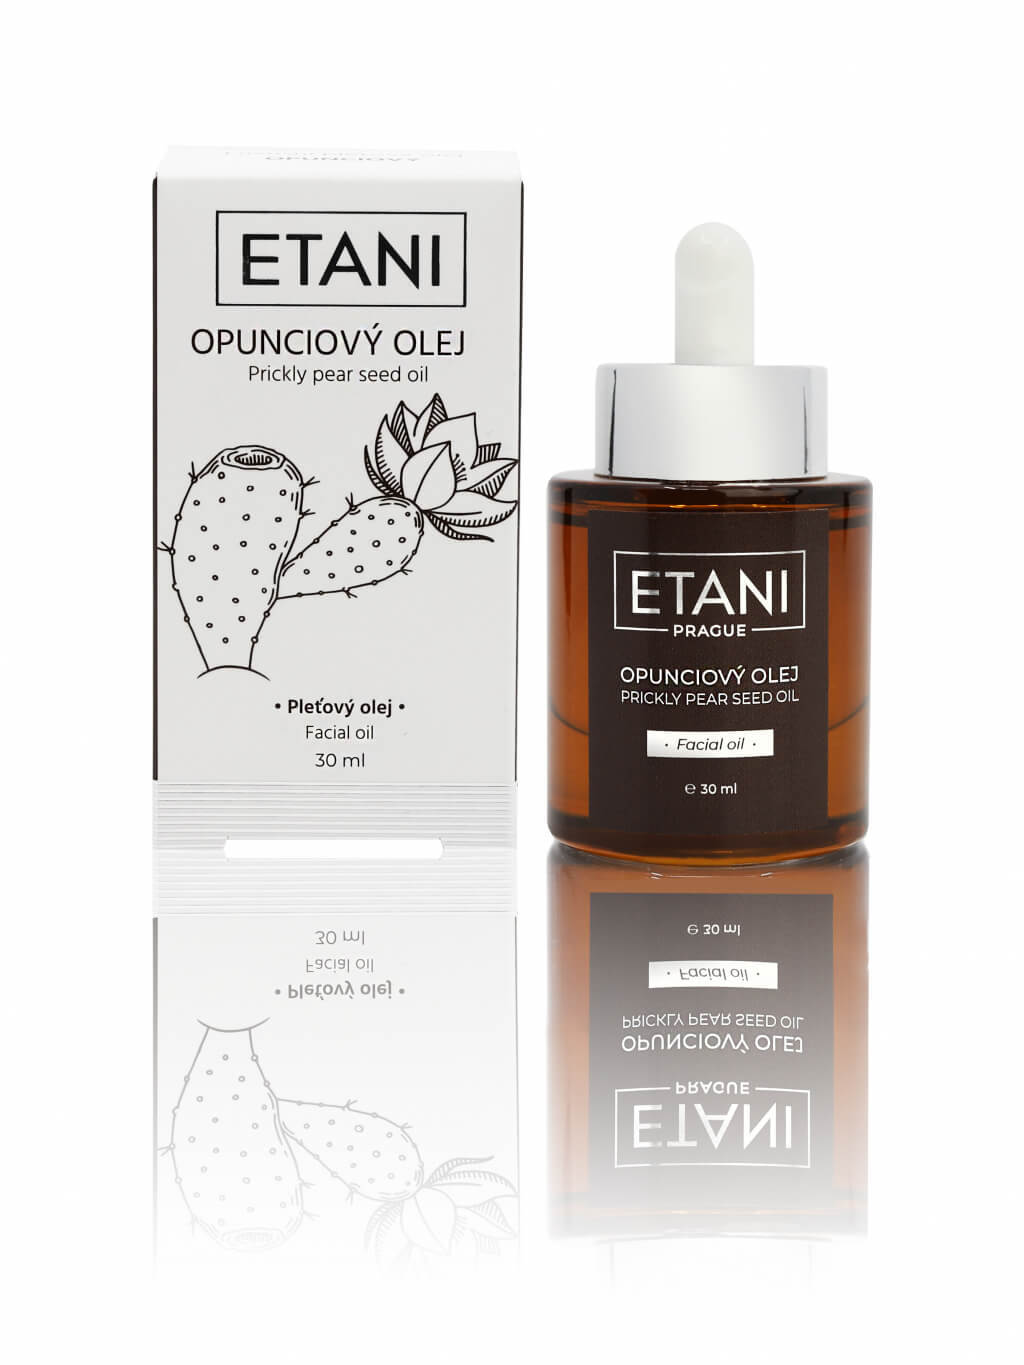 Zobrazit detail výrobku ETANI Opunciový olej 30 ml – nejdražší pleťový olej + 2 měsíce na vrácení zboží